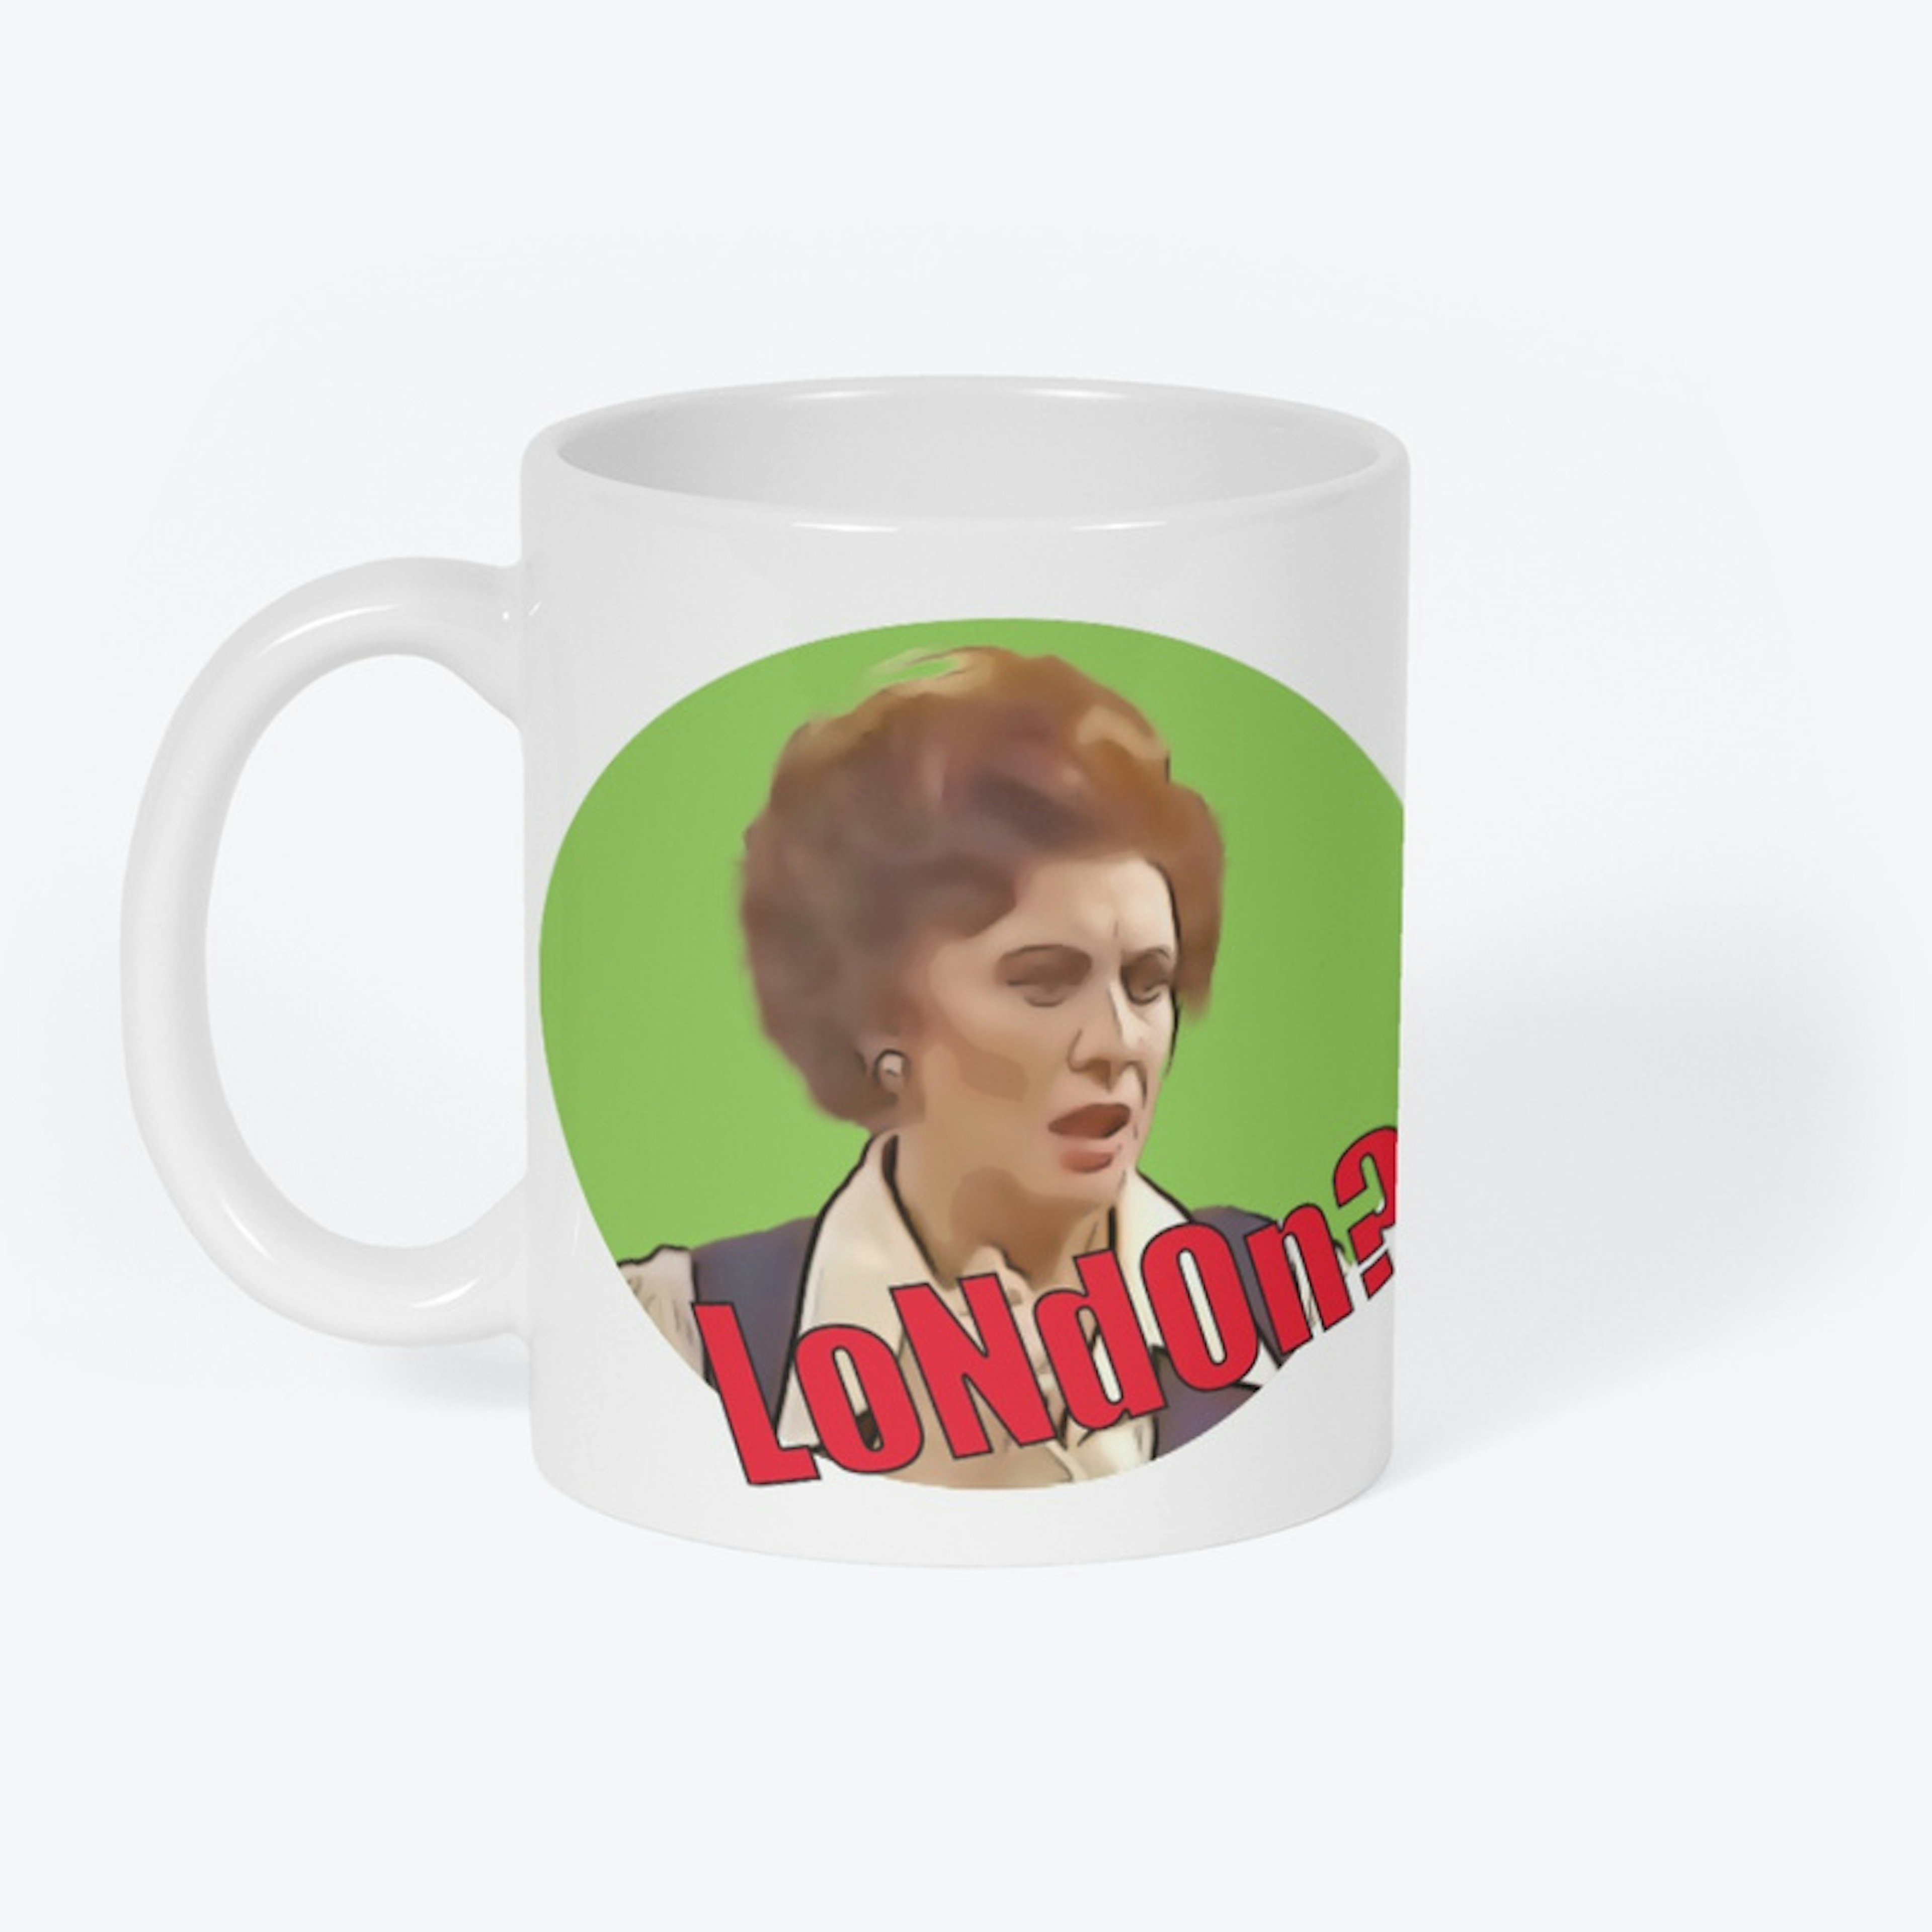 LoNdOn?! Mug